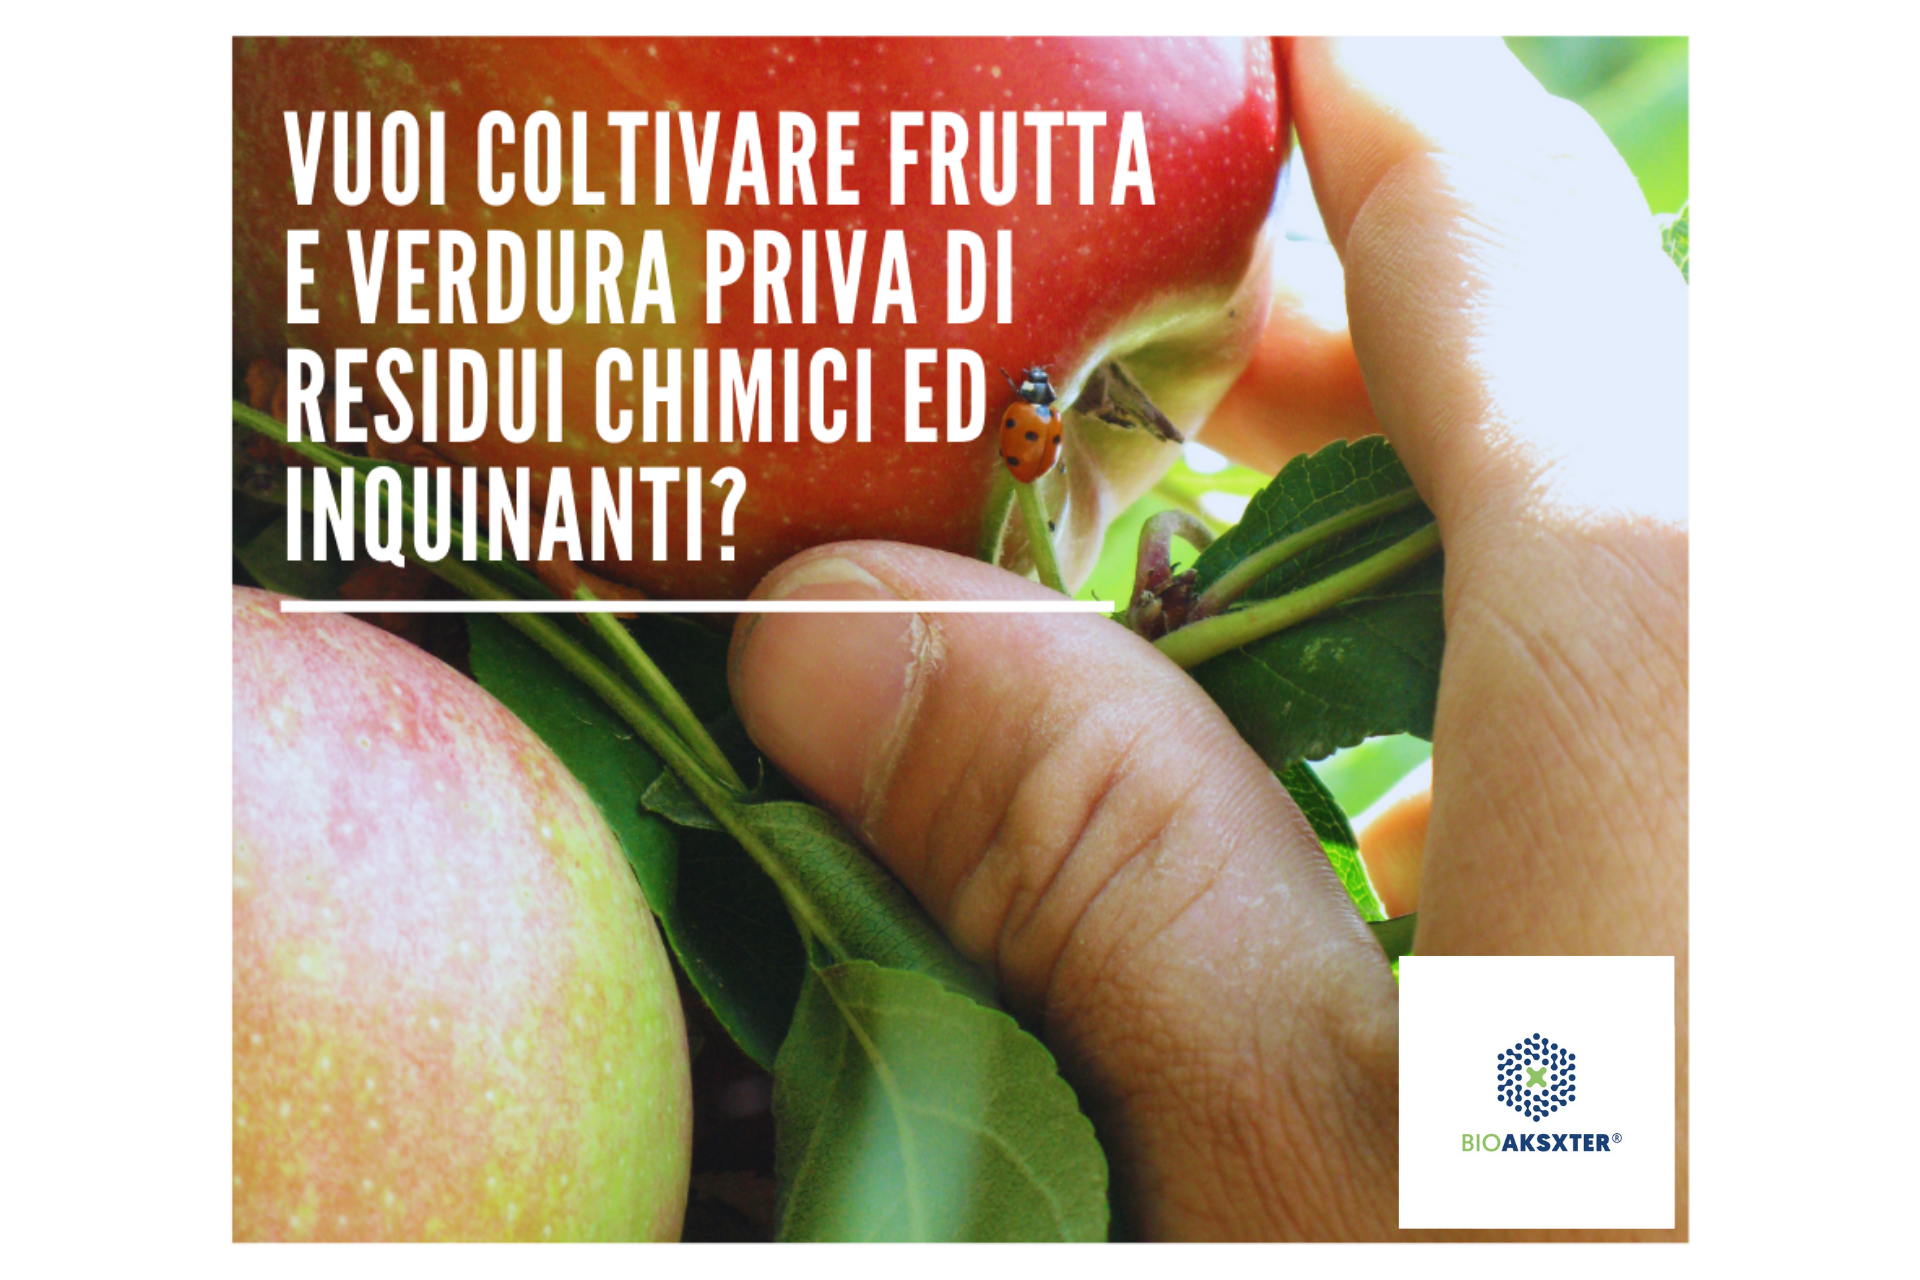 Coltivare-frutta-e-verdura-priva-di-residui-chimici-con-BioAksxter-tecnologia-disinquinante.png